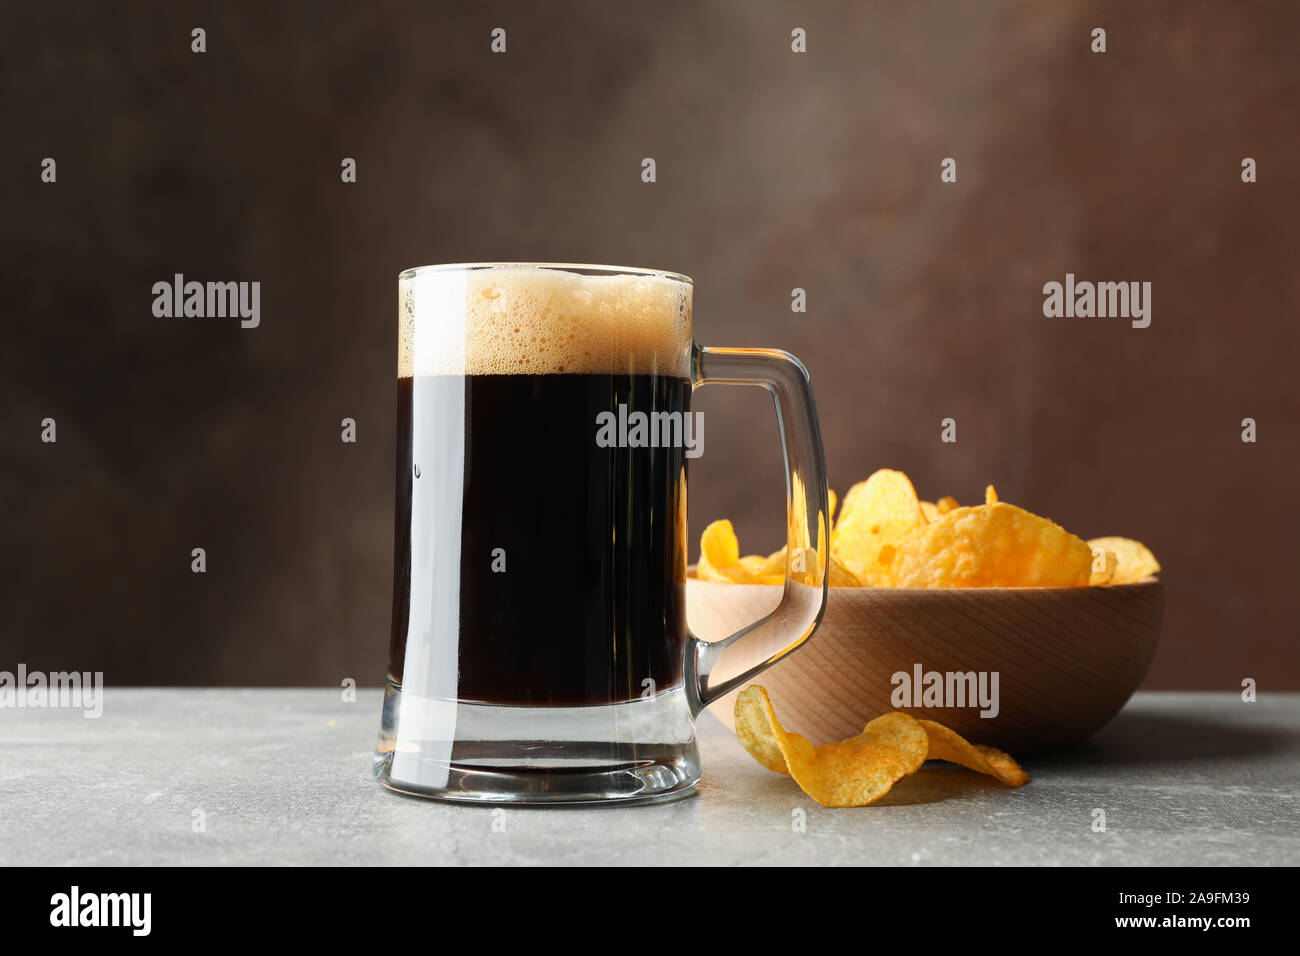 Vaso de cerveza oscura y chips en la tabla gris, espacio para texto Foto de stock